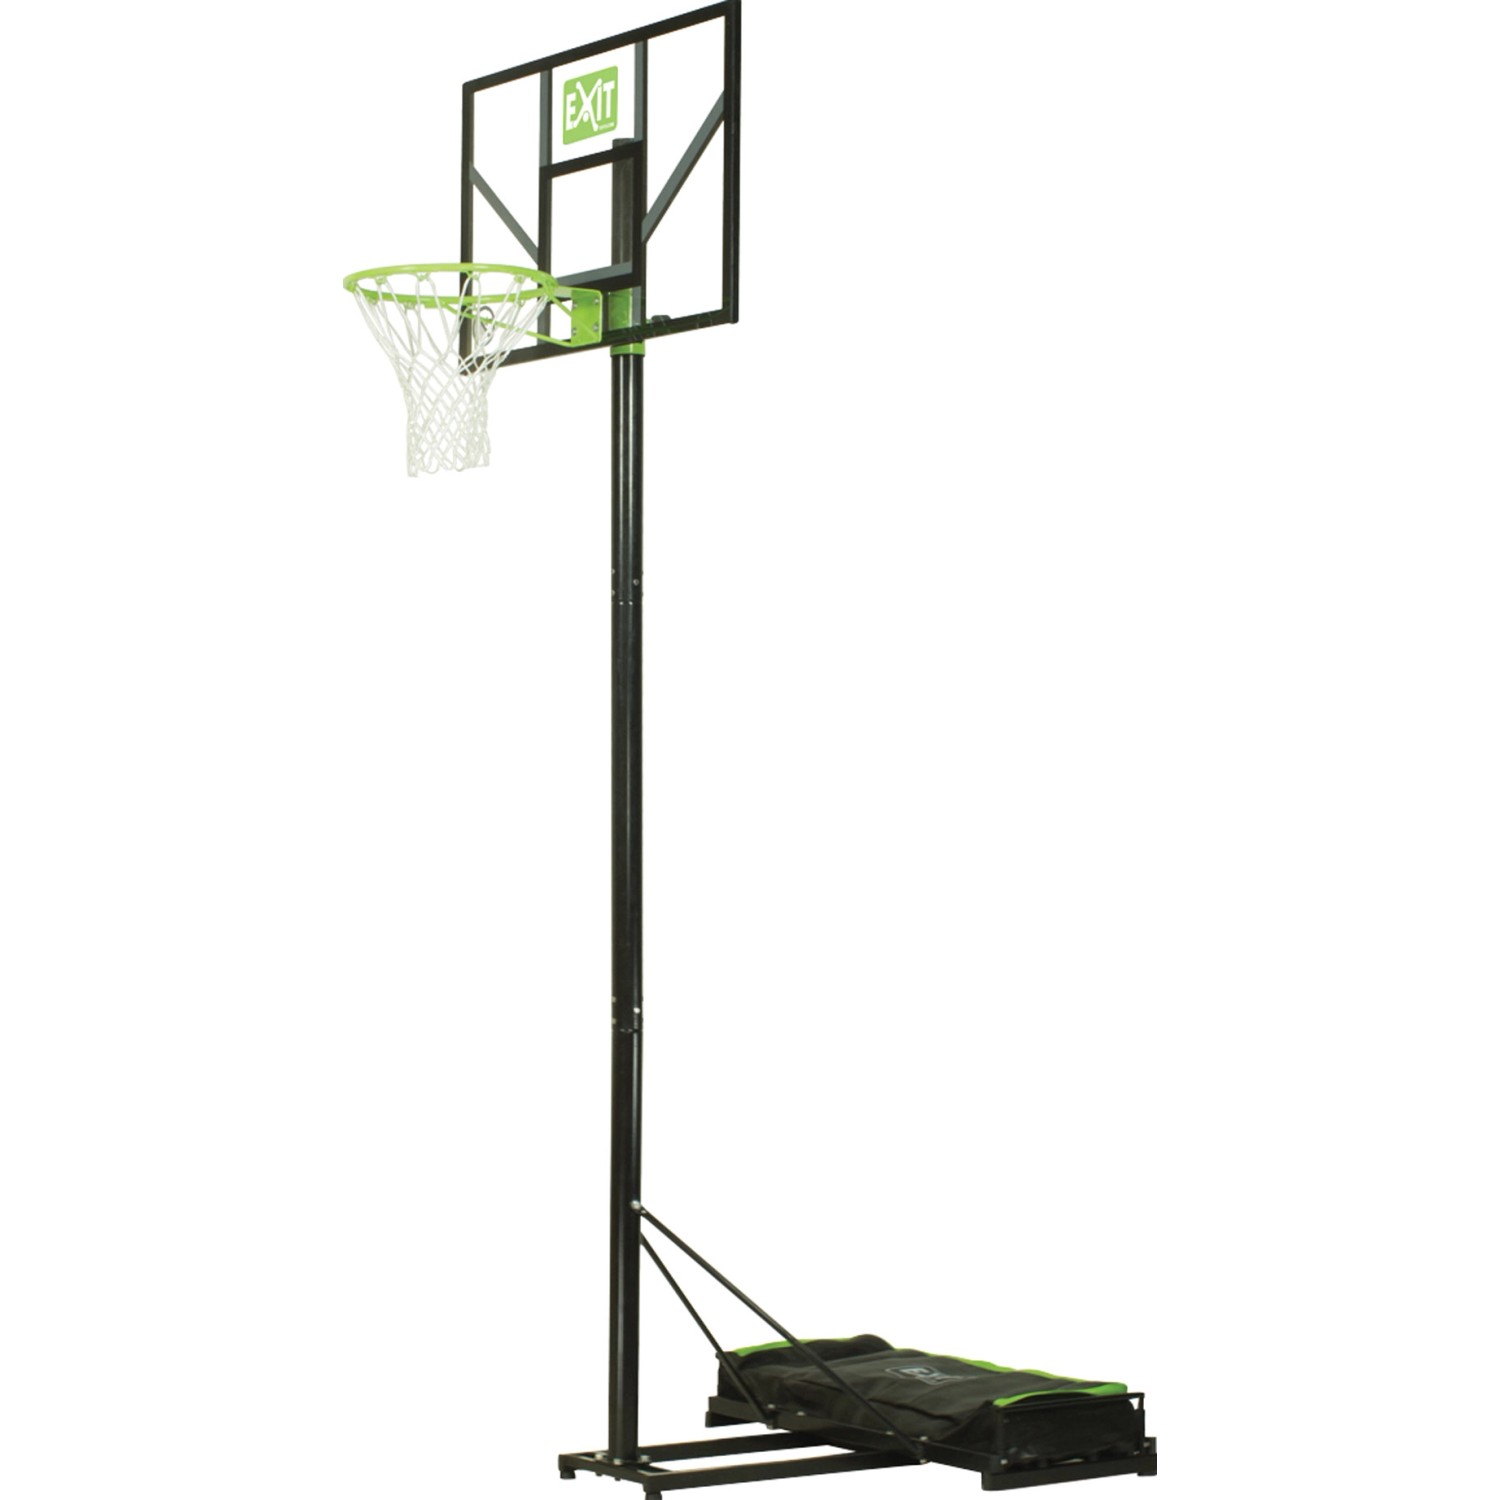 EXIT Comet versetzbarer Basketballkorb - grün/schwarz von Exit Toys